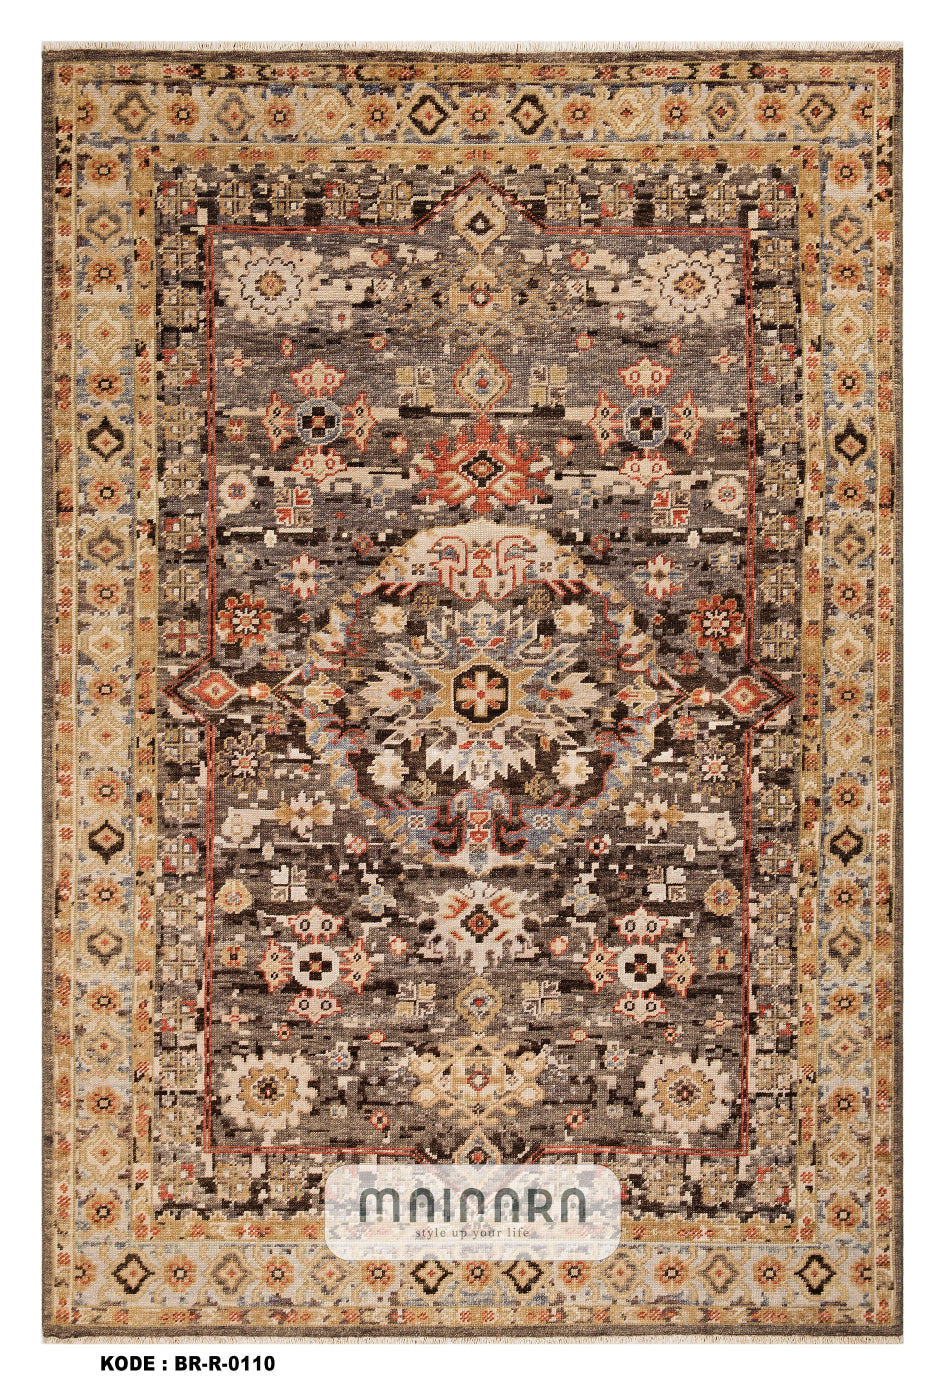 Karpet Tradisional (BR-T-0110) - Brown,Gold,Orange